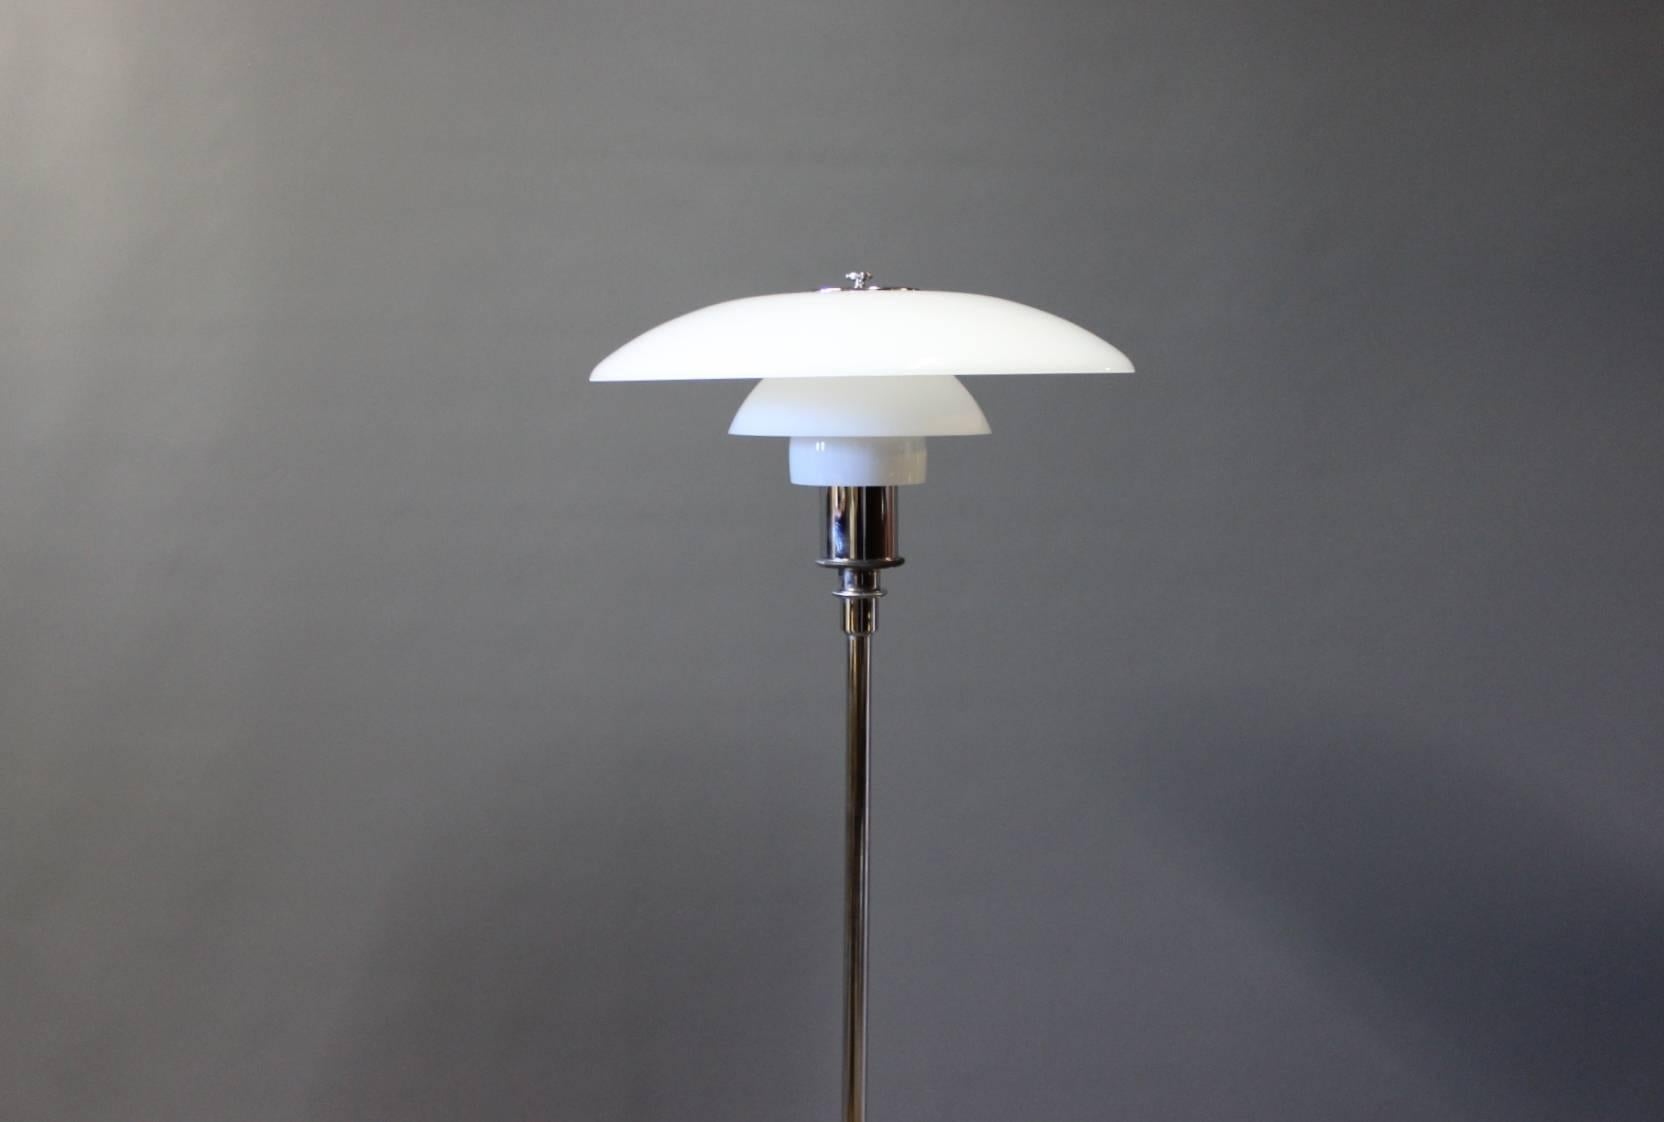 Le lampadaire PH3½/2½, membre distingué de la célèbre famille 3/2, représente l'héritage de Poul Henningsen en matière de design d'éclairage exquis. Collaboration avec Louis Poulsen en 2002, cette lampe est une fusion d'élégance et de